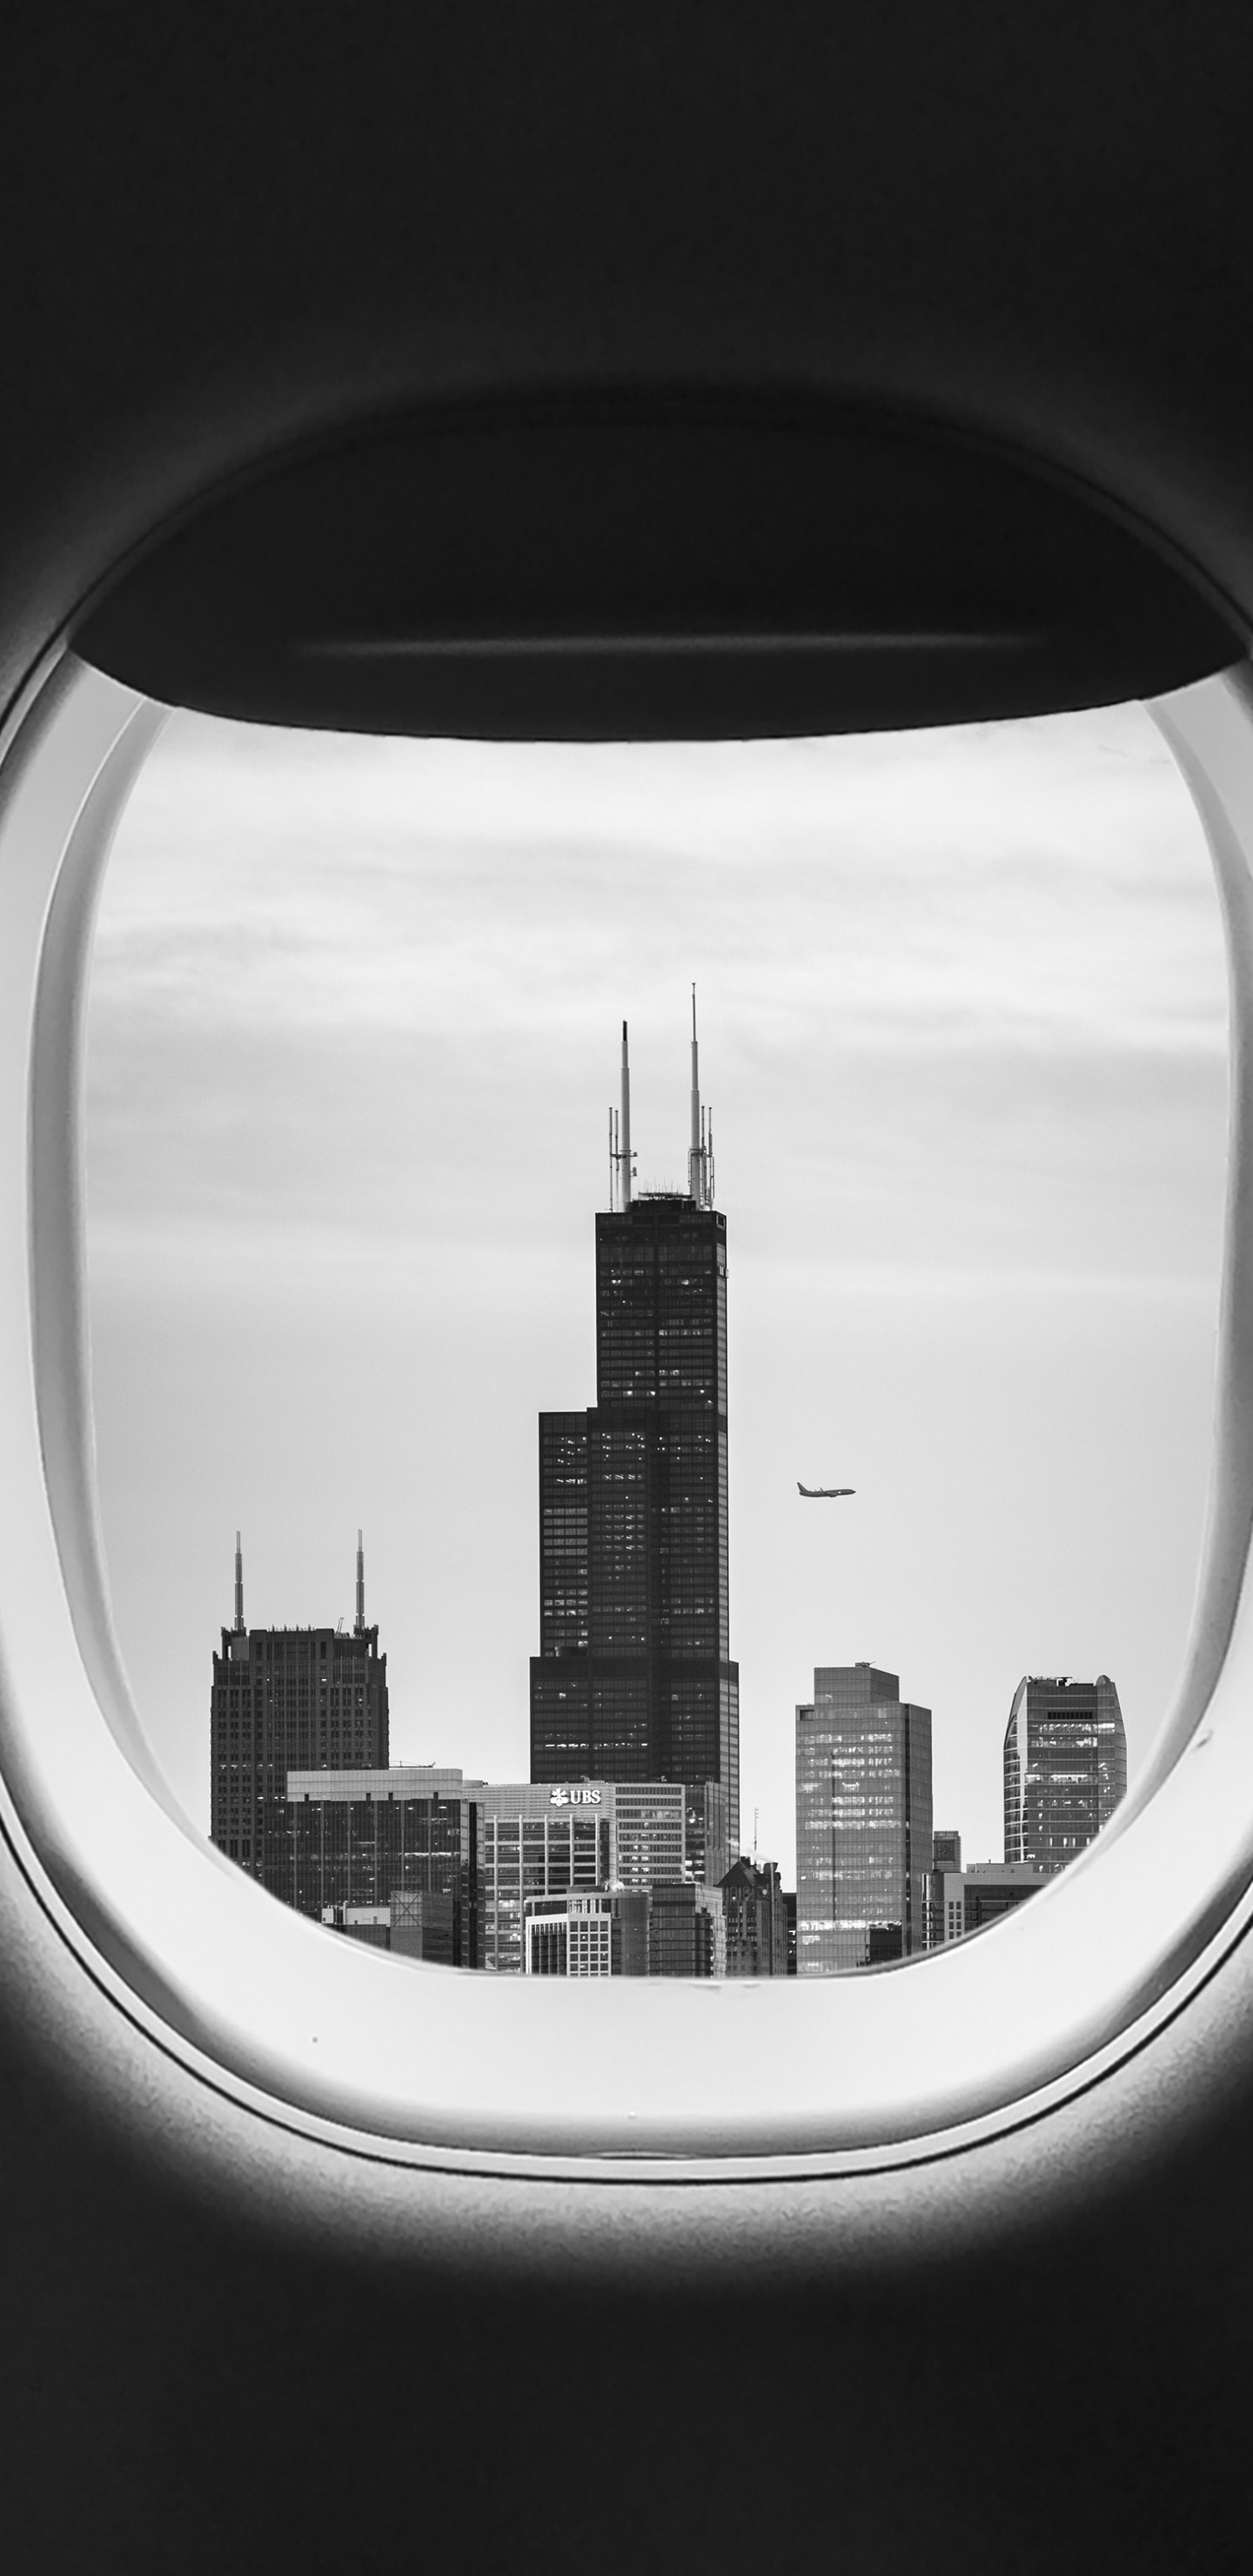 Flugzeugfensteransicht Von Stadtgebäuden Während Des Tages. Wallpaper in 1440x2960 Resolution